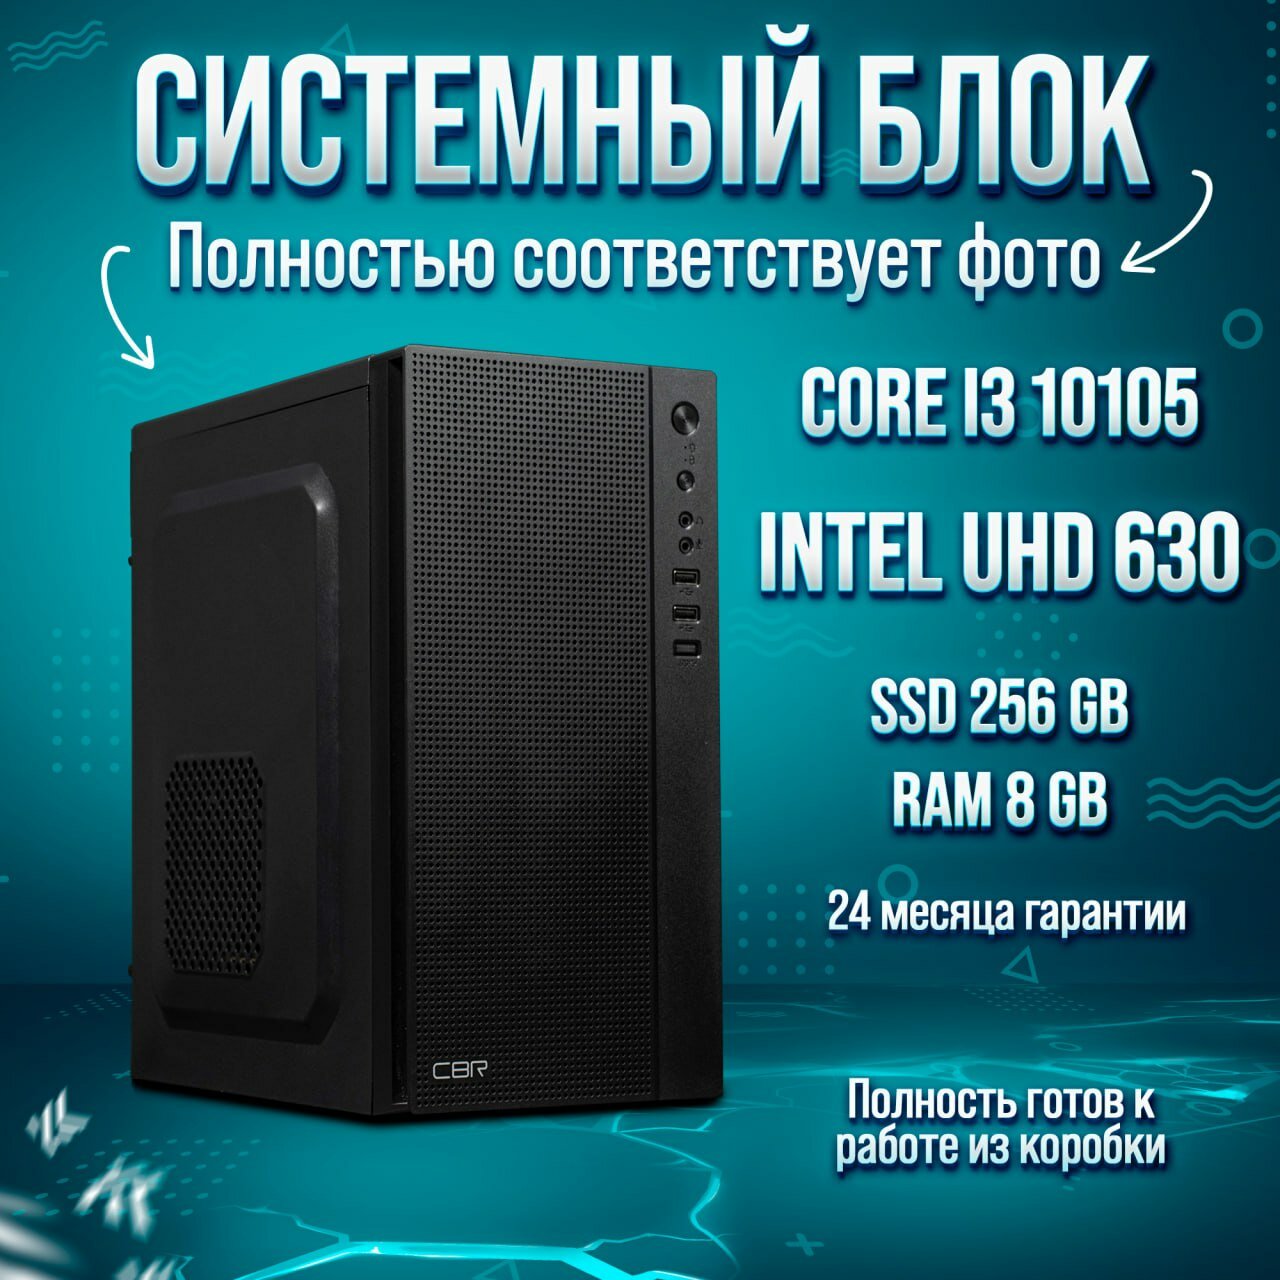 Системный блок King Komp Intel Core i3 10105 UHD Graphics 630 DDR4 8GB SSD 256GB